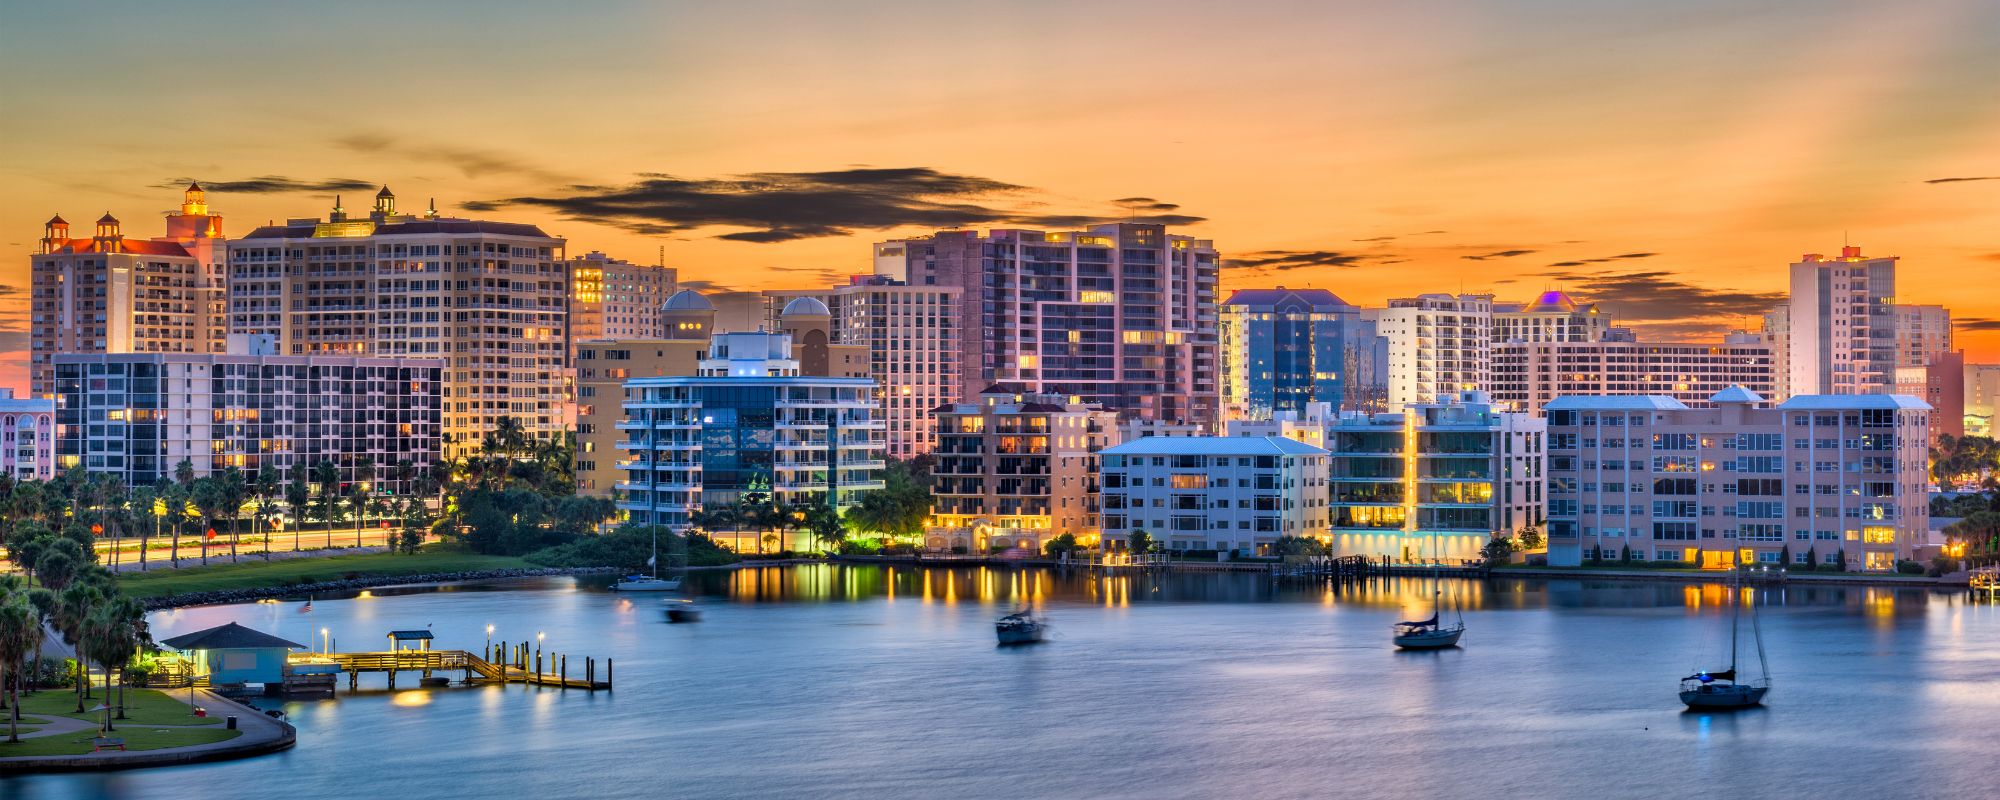 Florida's cityscape